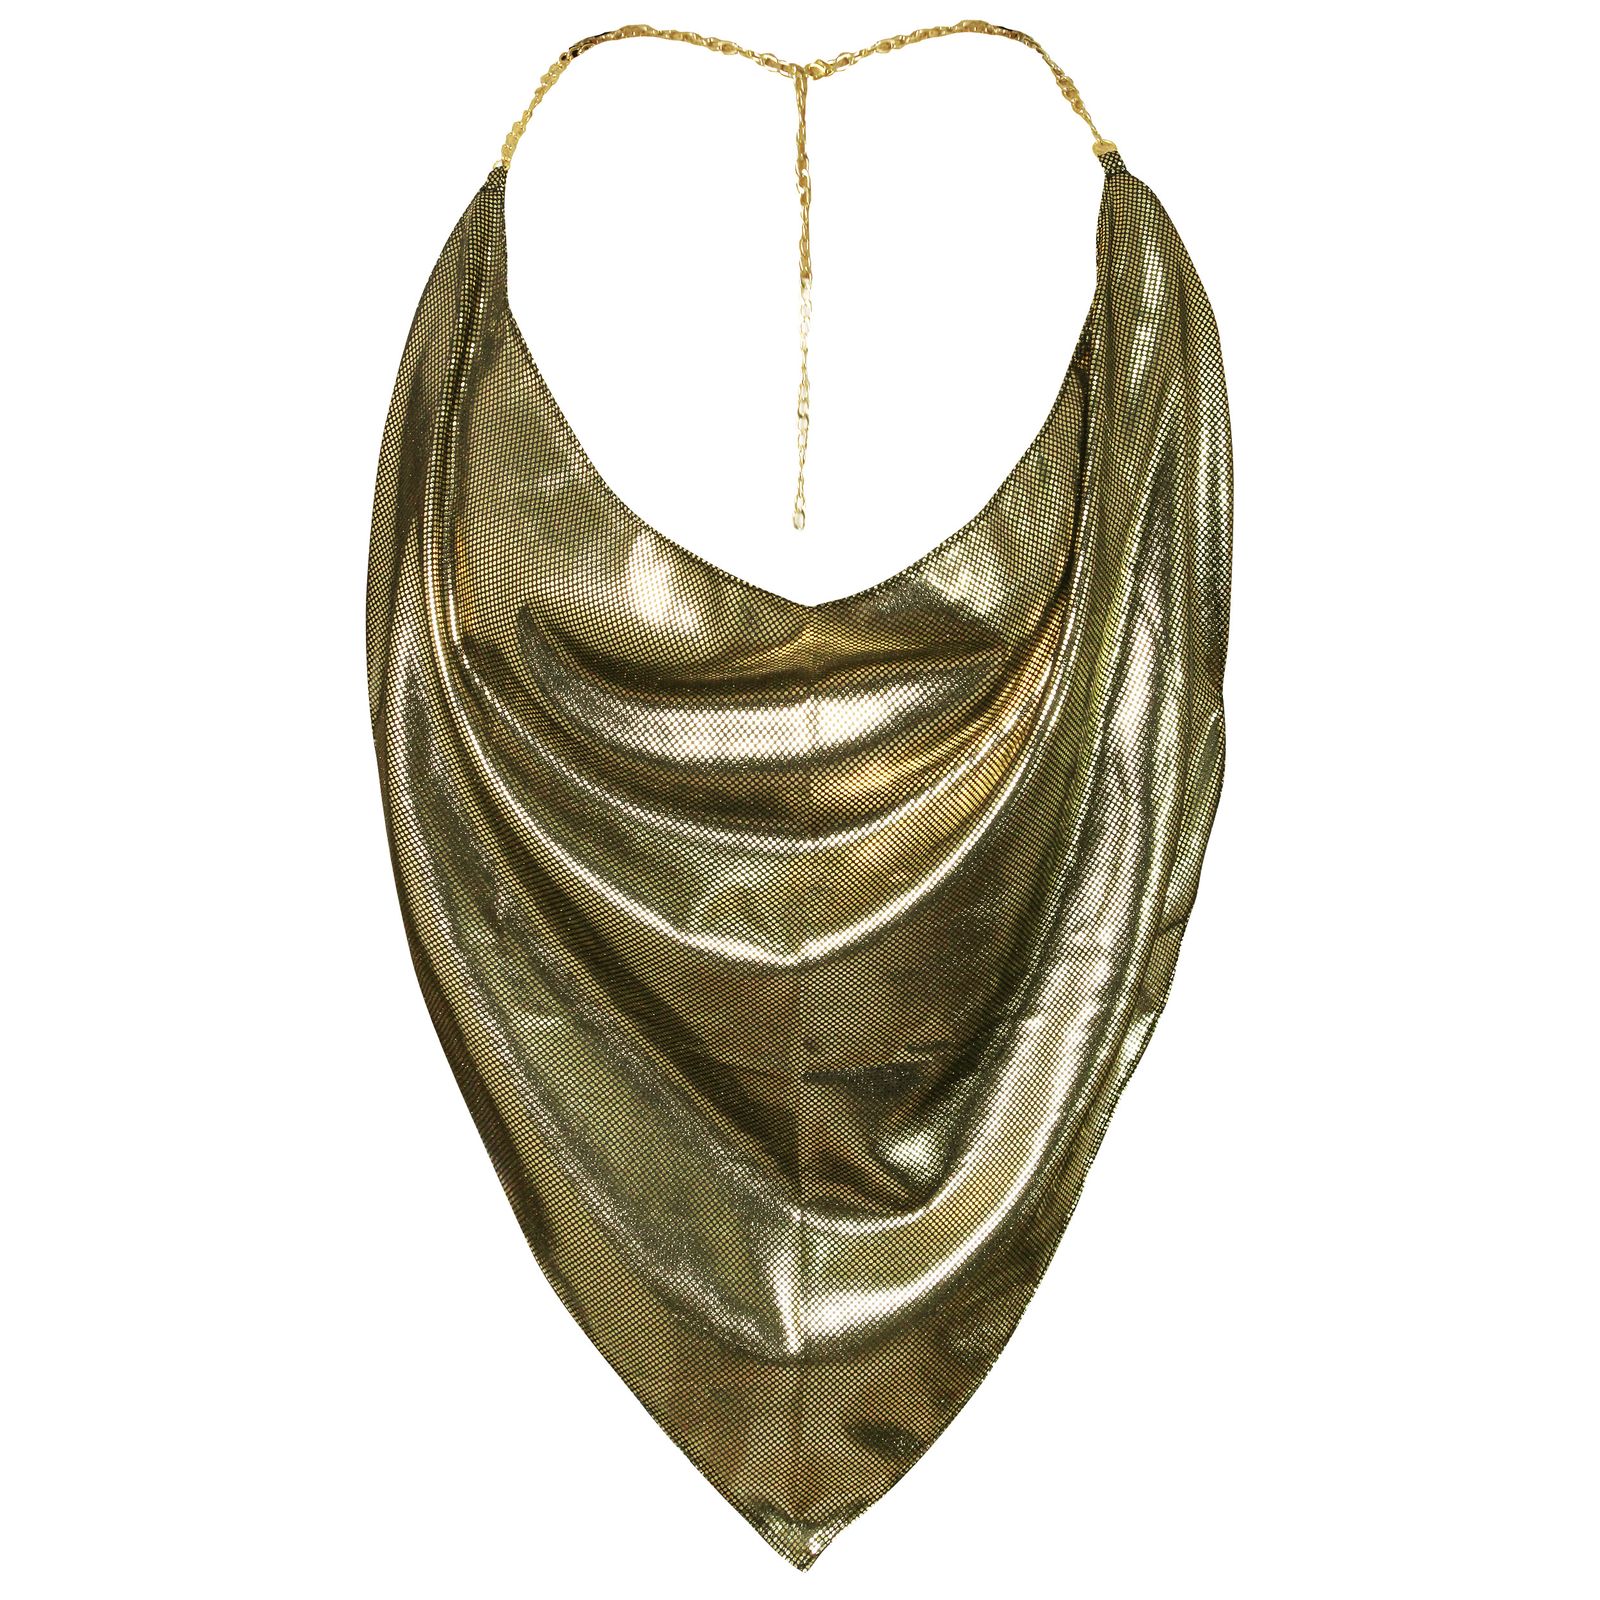 لباس خواب زنانه ماییلدا مدل زنجیر پوست ماری کد 3684-440-G رنگ طلایی -  - 3